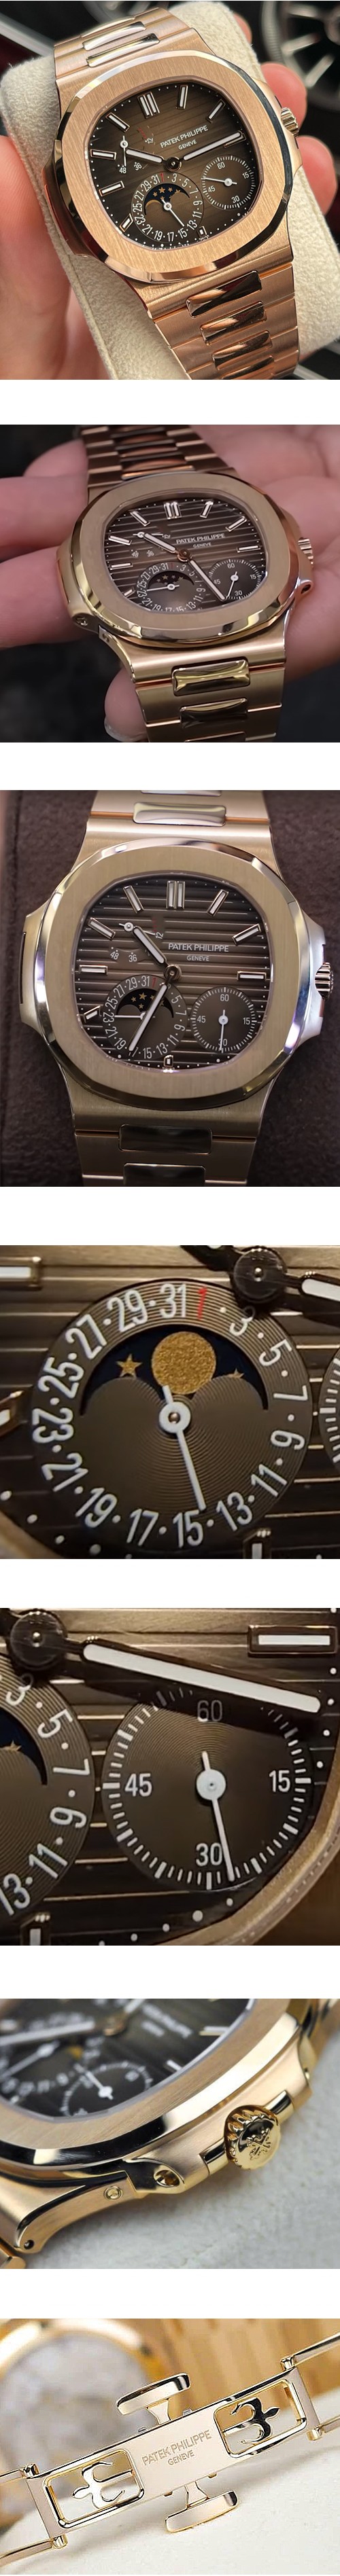 パテックフィリップ腕時計の説明